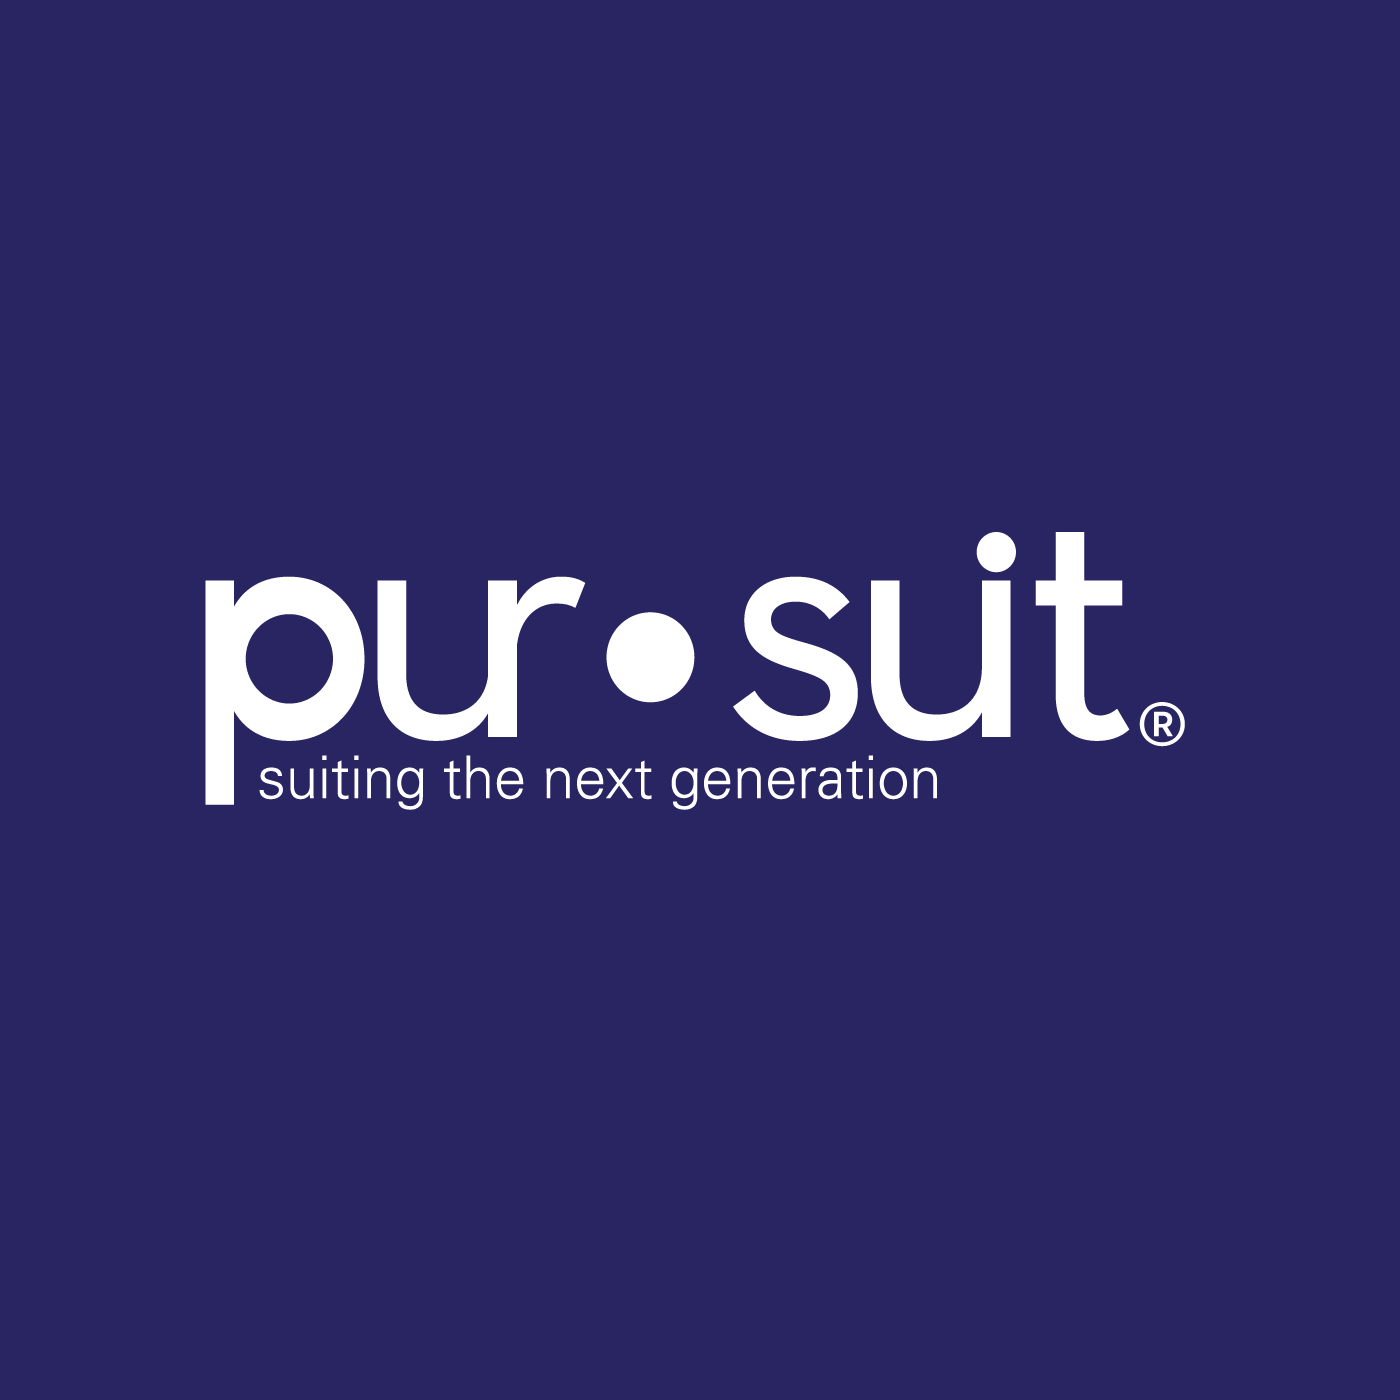 Pursuit Logo - Pursuit - Modern Suit Store, Old-Fashioned Service